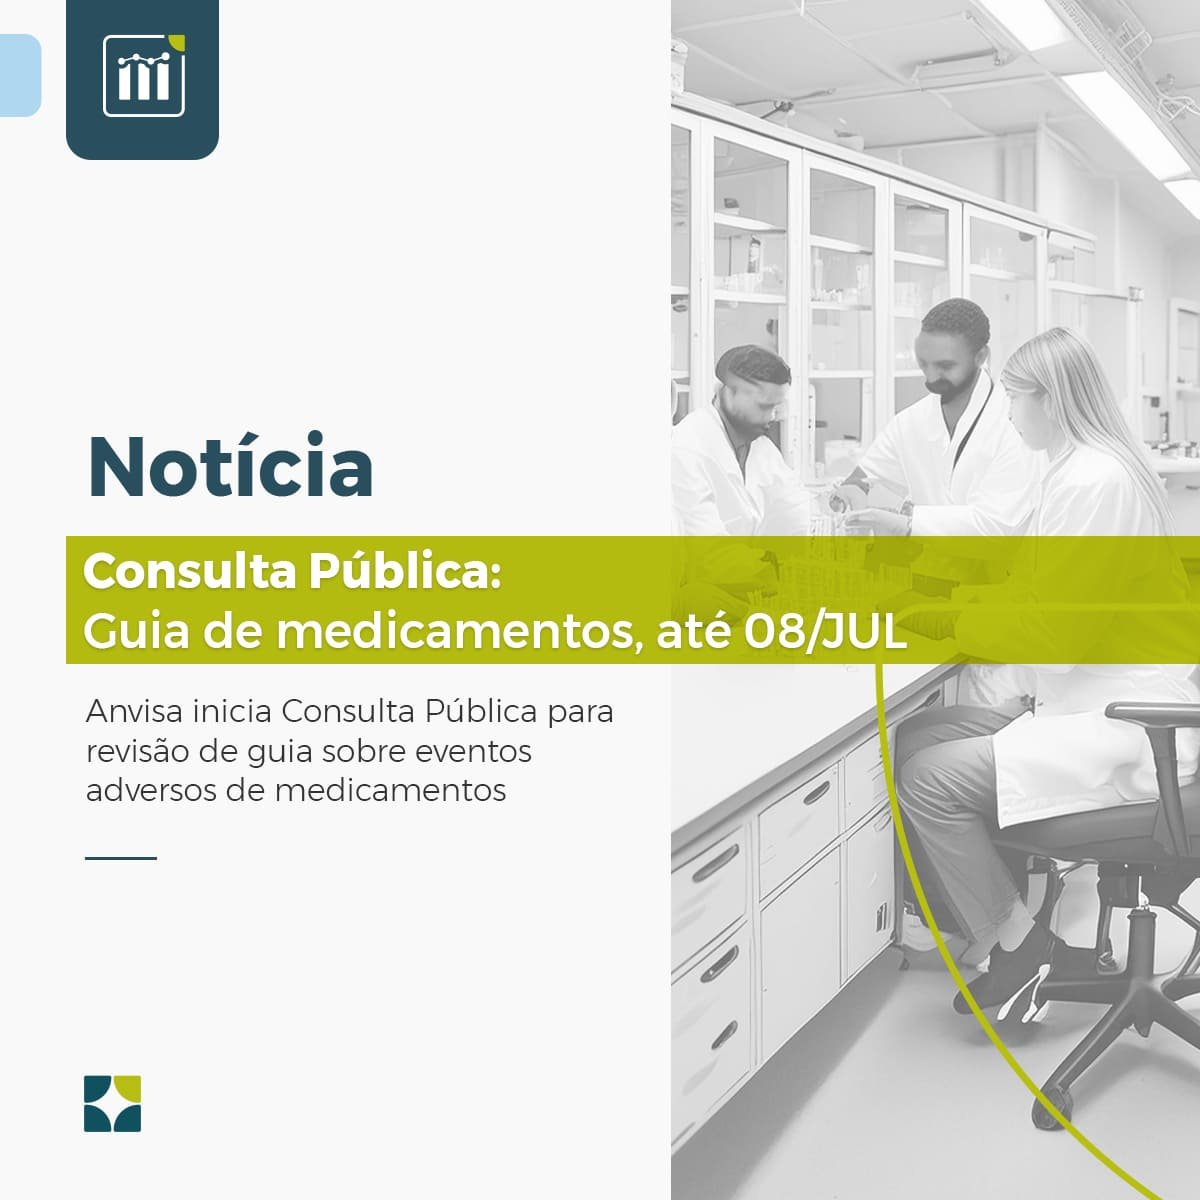 Consulta Pública: Guia de medicamentos, até 08/JUL